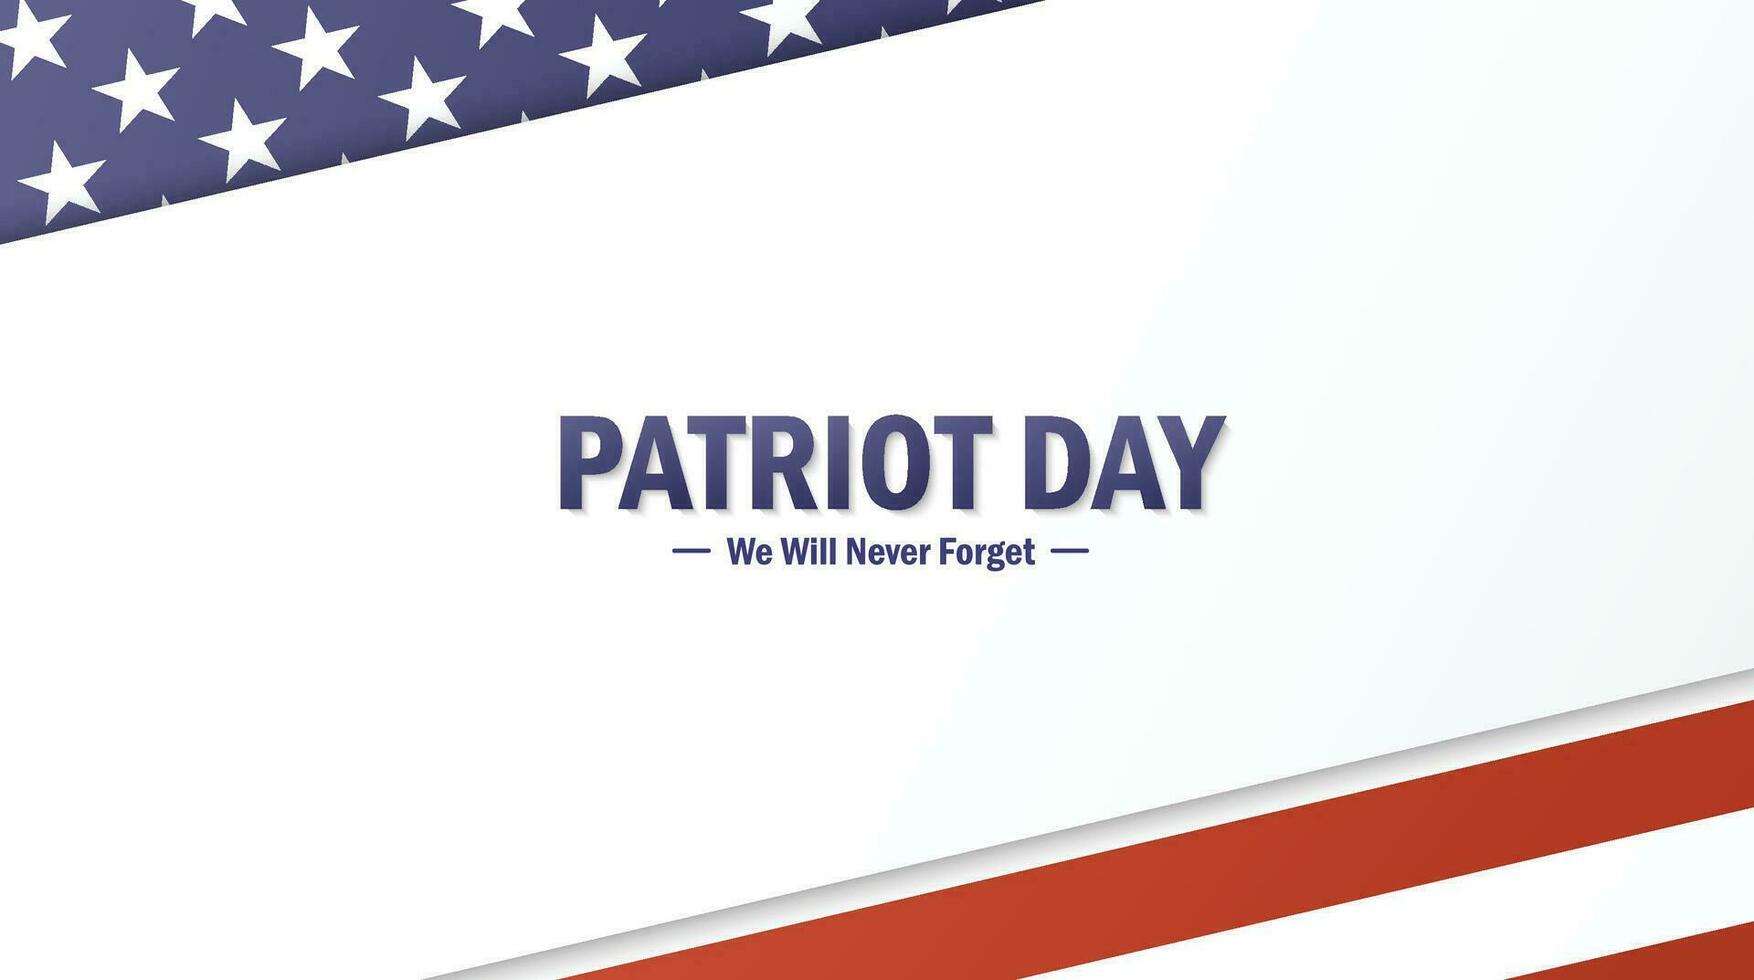 patriot dag achtergrond met nationaal vlag van ons. wij zullen nooit vergeten september 9, 11, 2001, groet kaart, vector illustratie.